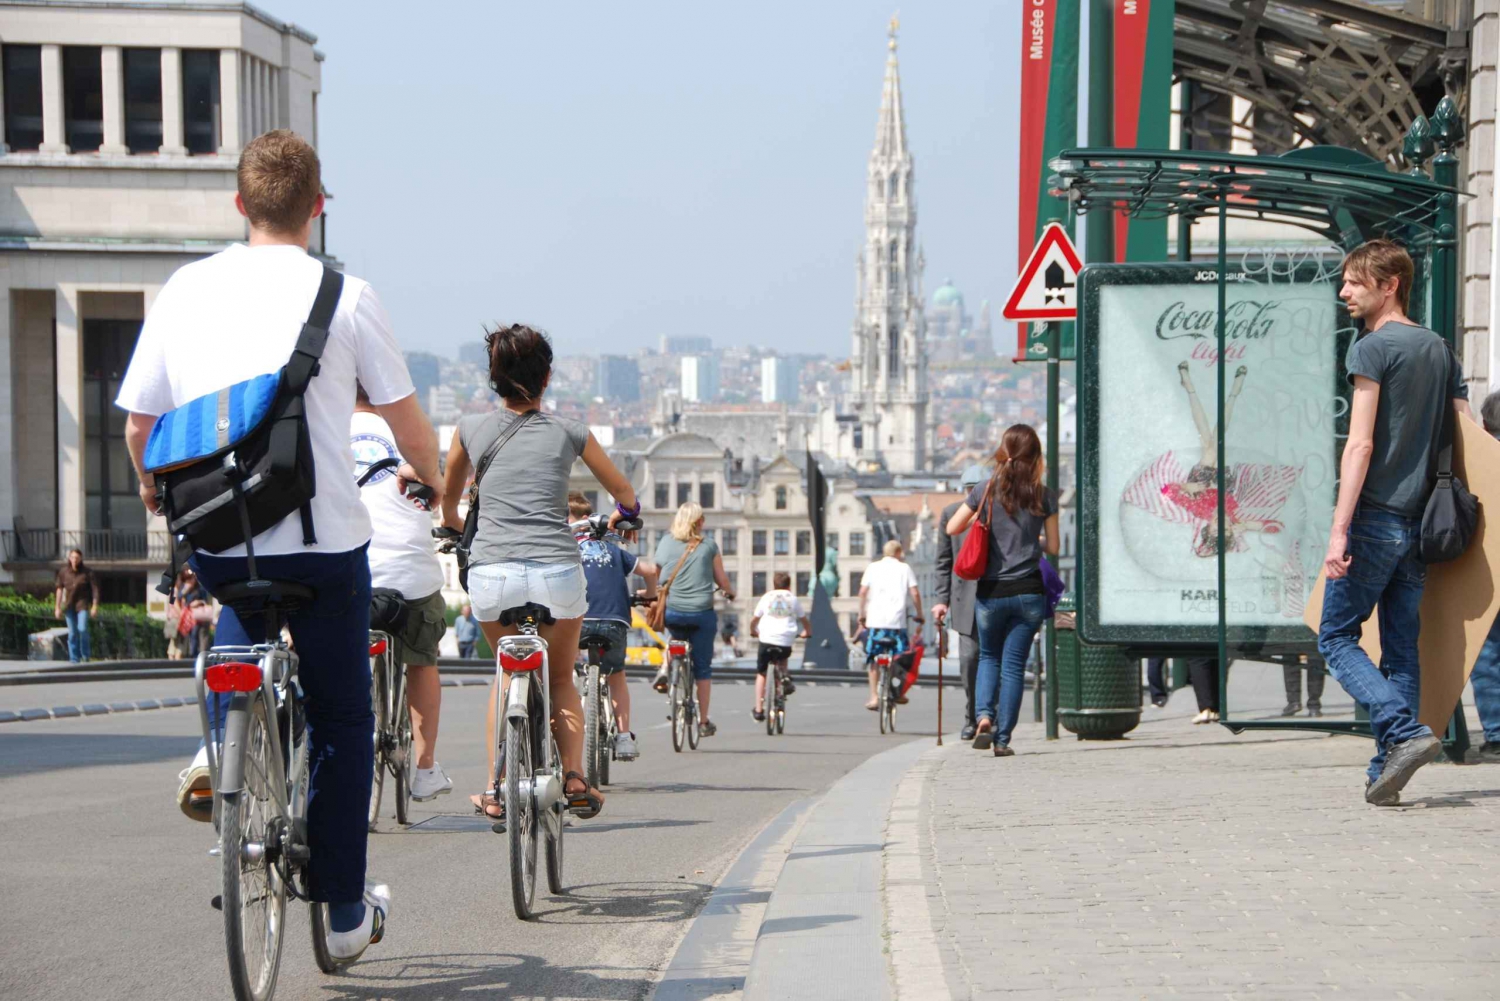 Bruxelles : Visite touristique à vélo